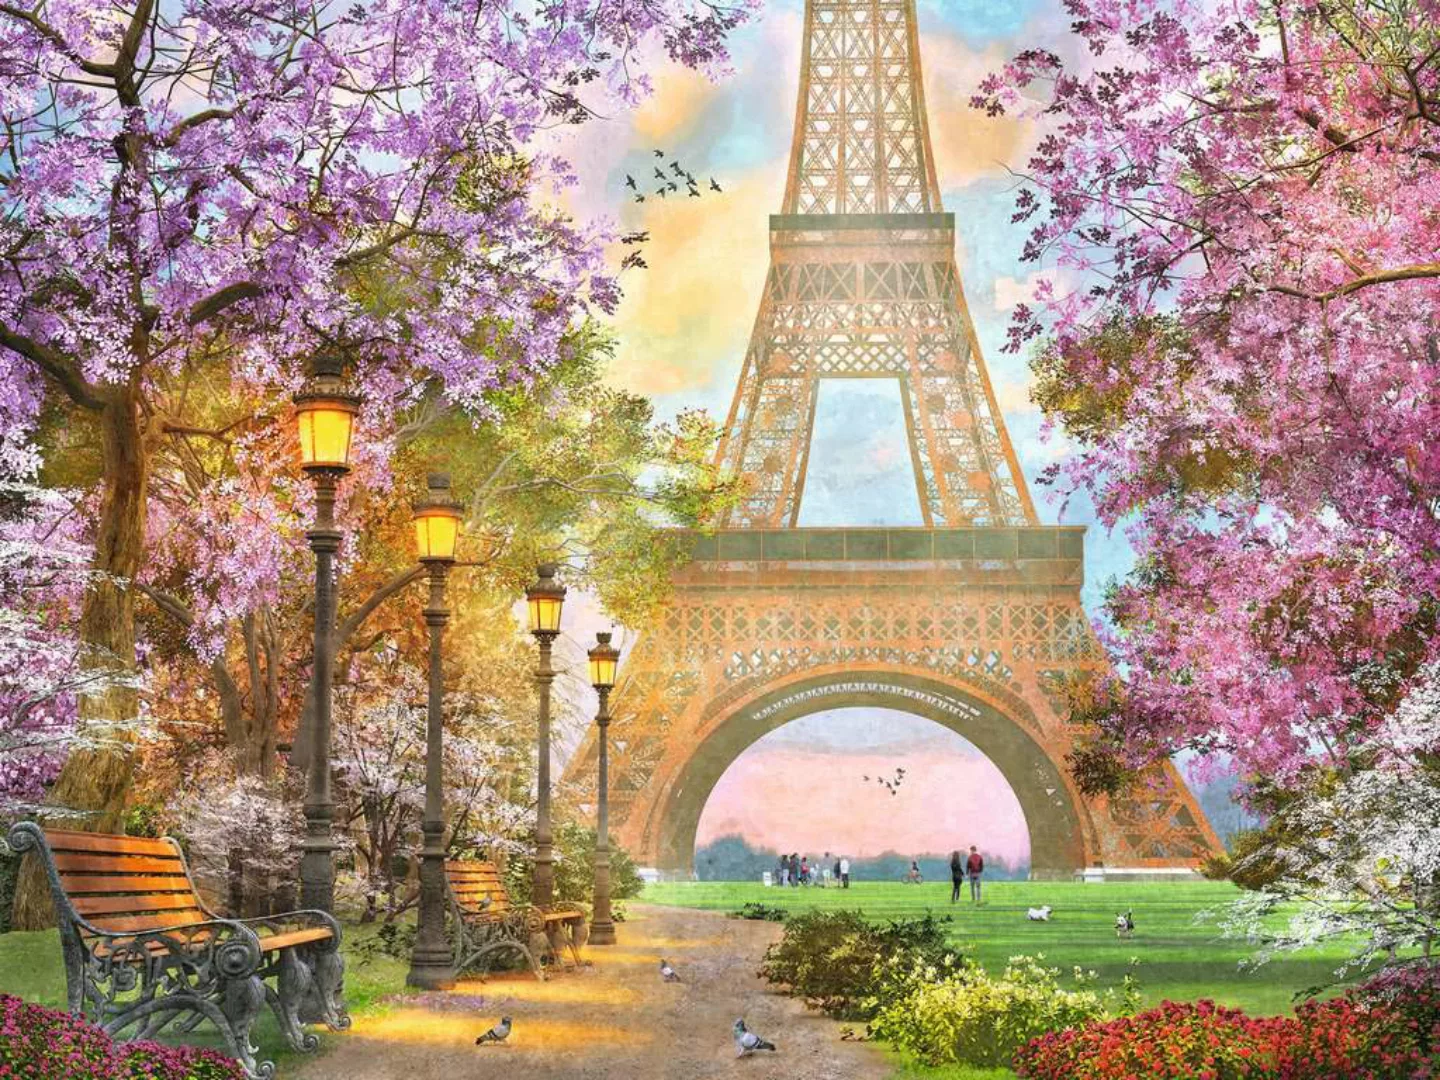 Verliebt In Paris - Puzzle 1500 Teile günstig online kaufen